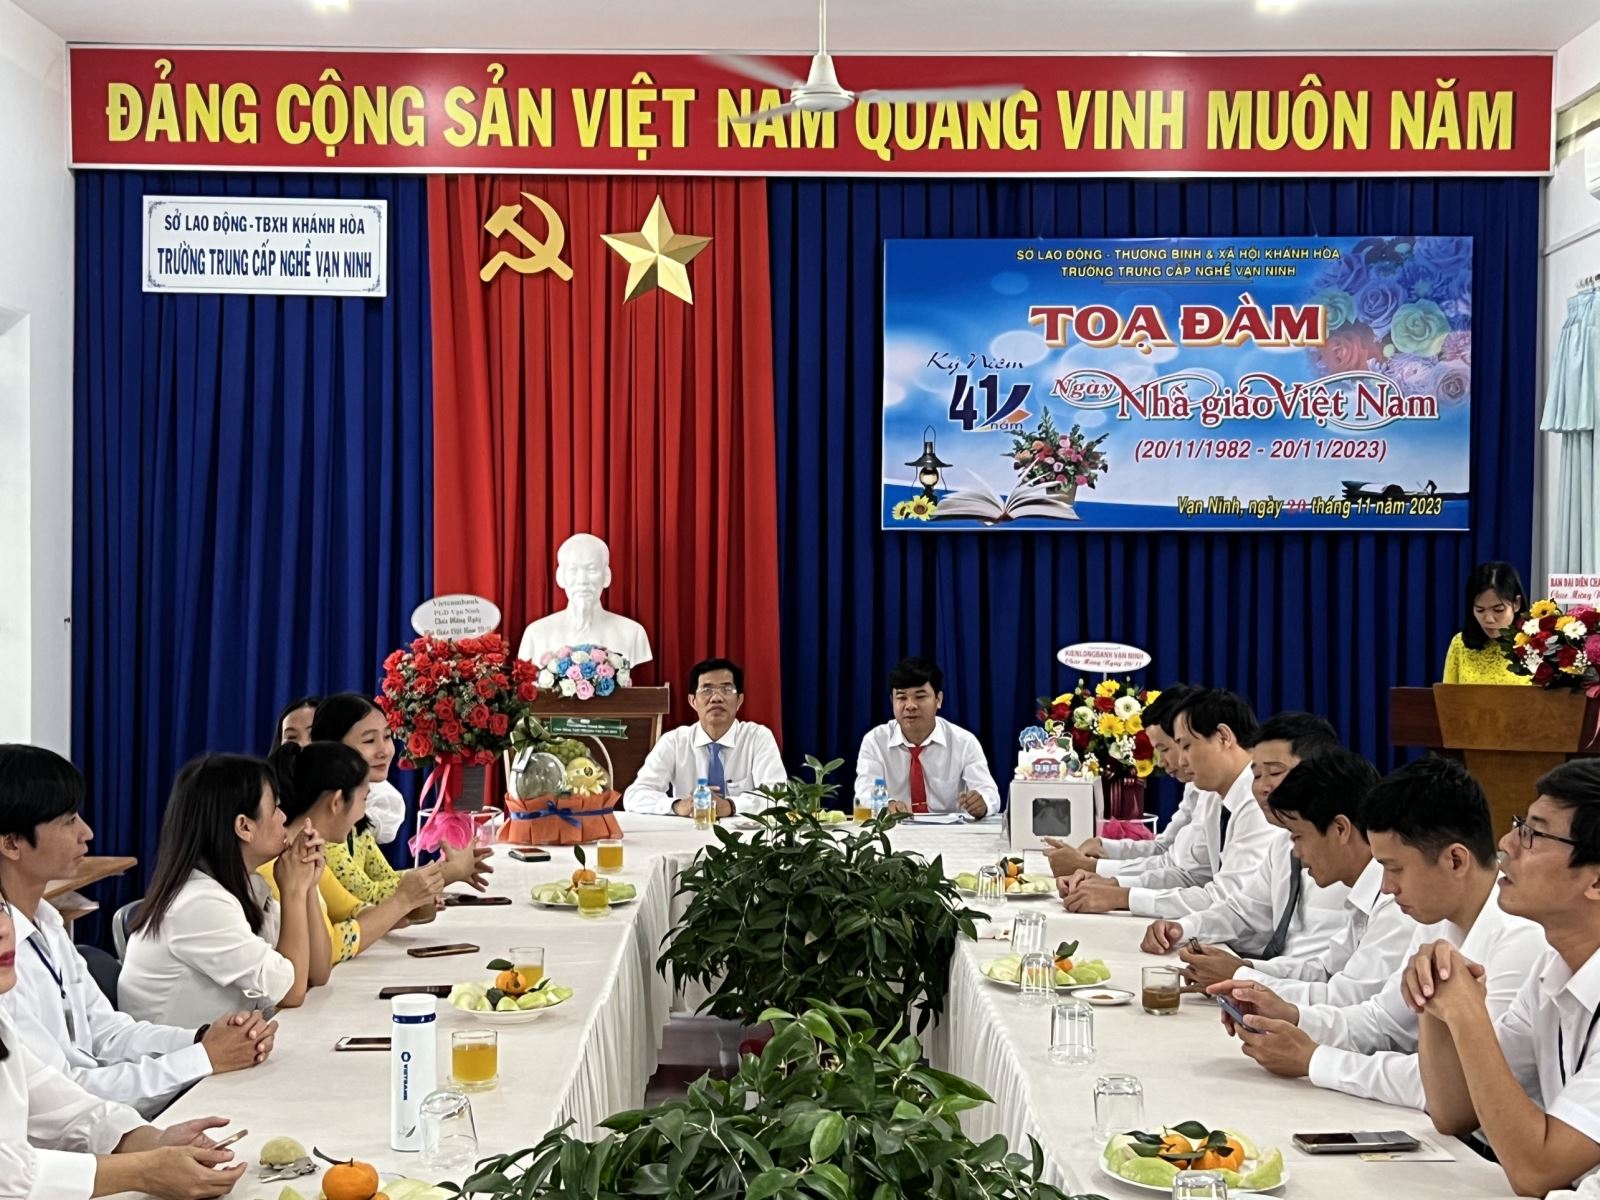 Tọa đàm kỷ niệm 41 năm ngày Nhà giáo Việt nam (20/11/1982 – 20/11/2023)